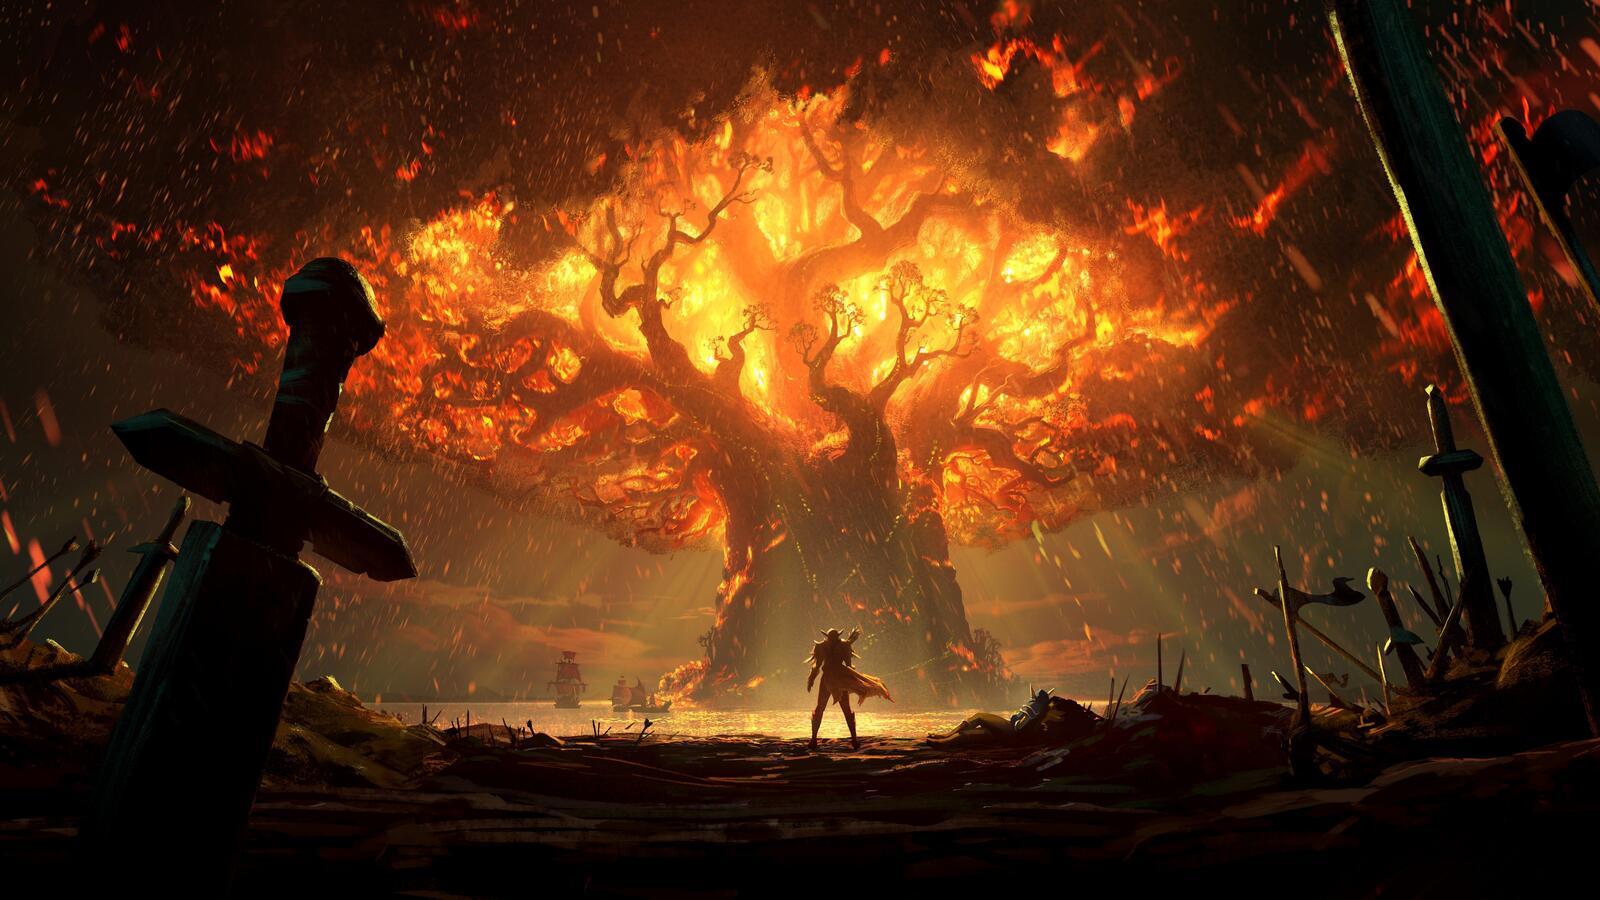 Бесплатное фото Огненное дерево из World of Warcraft